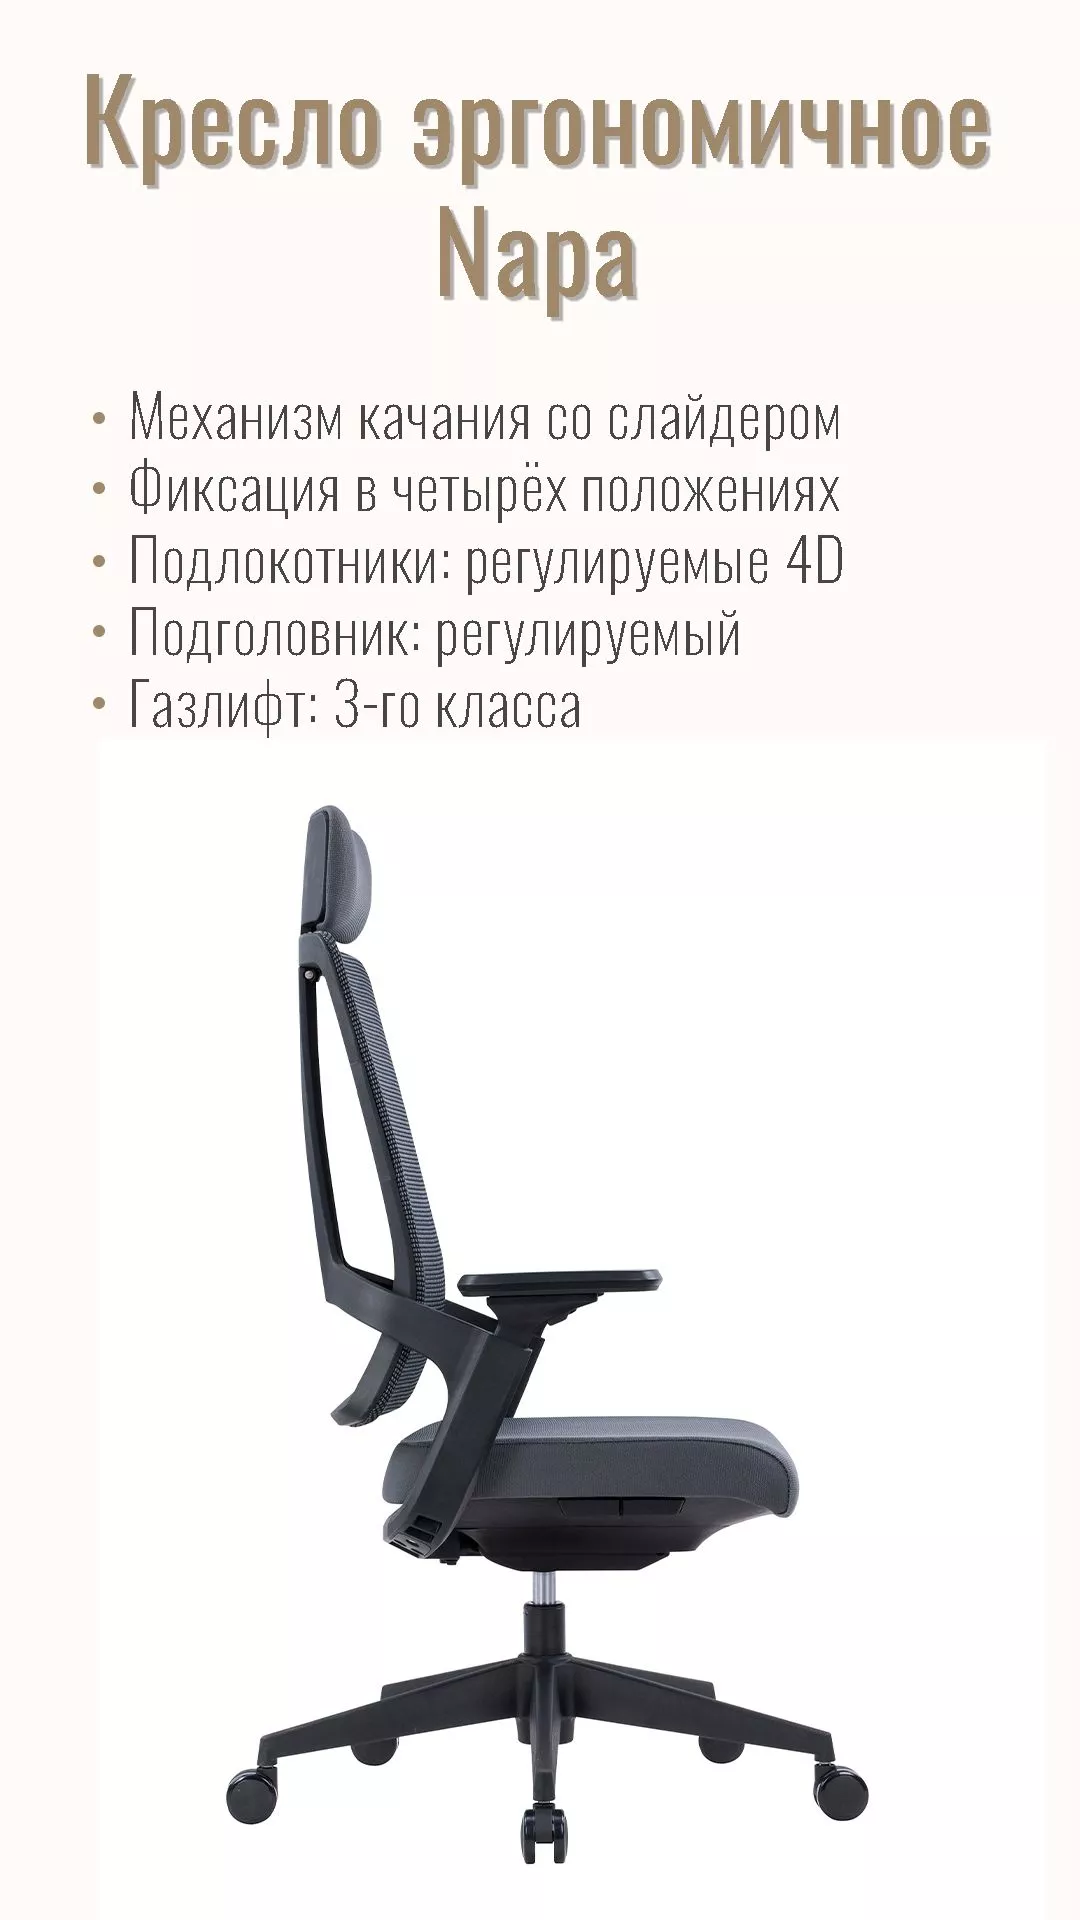 Кресло офисное (эргономичное) NORDEN Napa черный CH-320A-B-GG